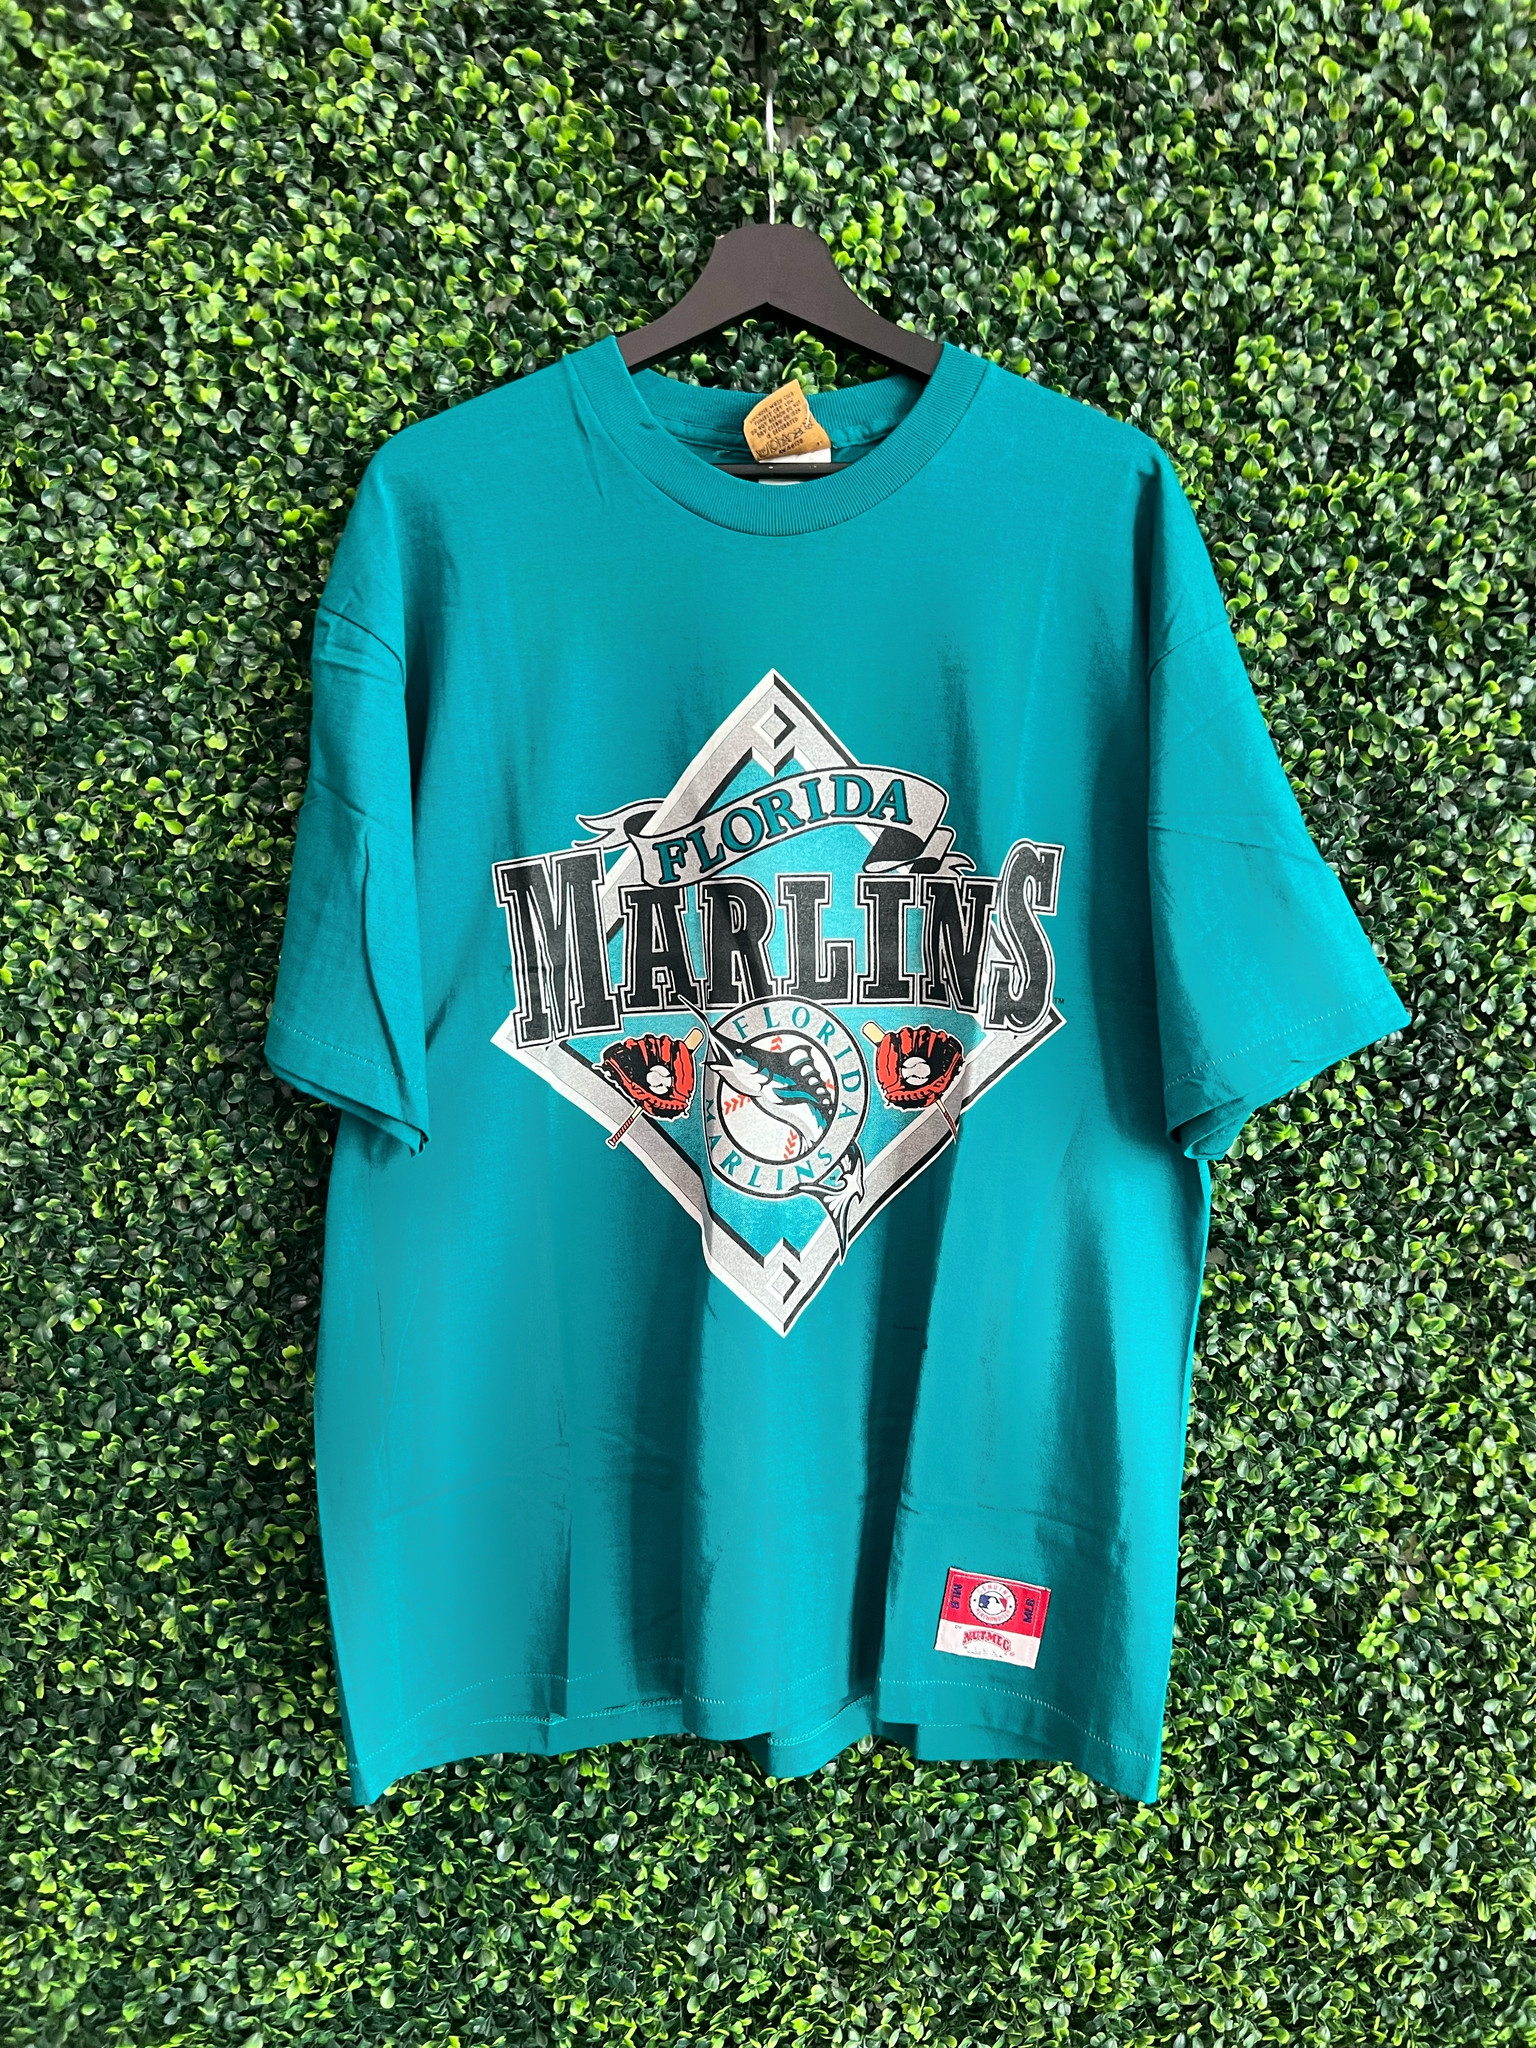 Vintage Florida Marlins T-Shirt